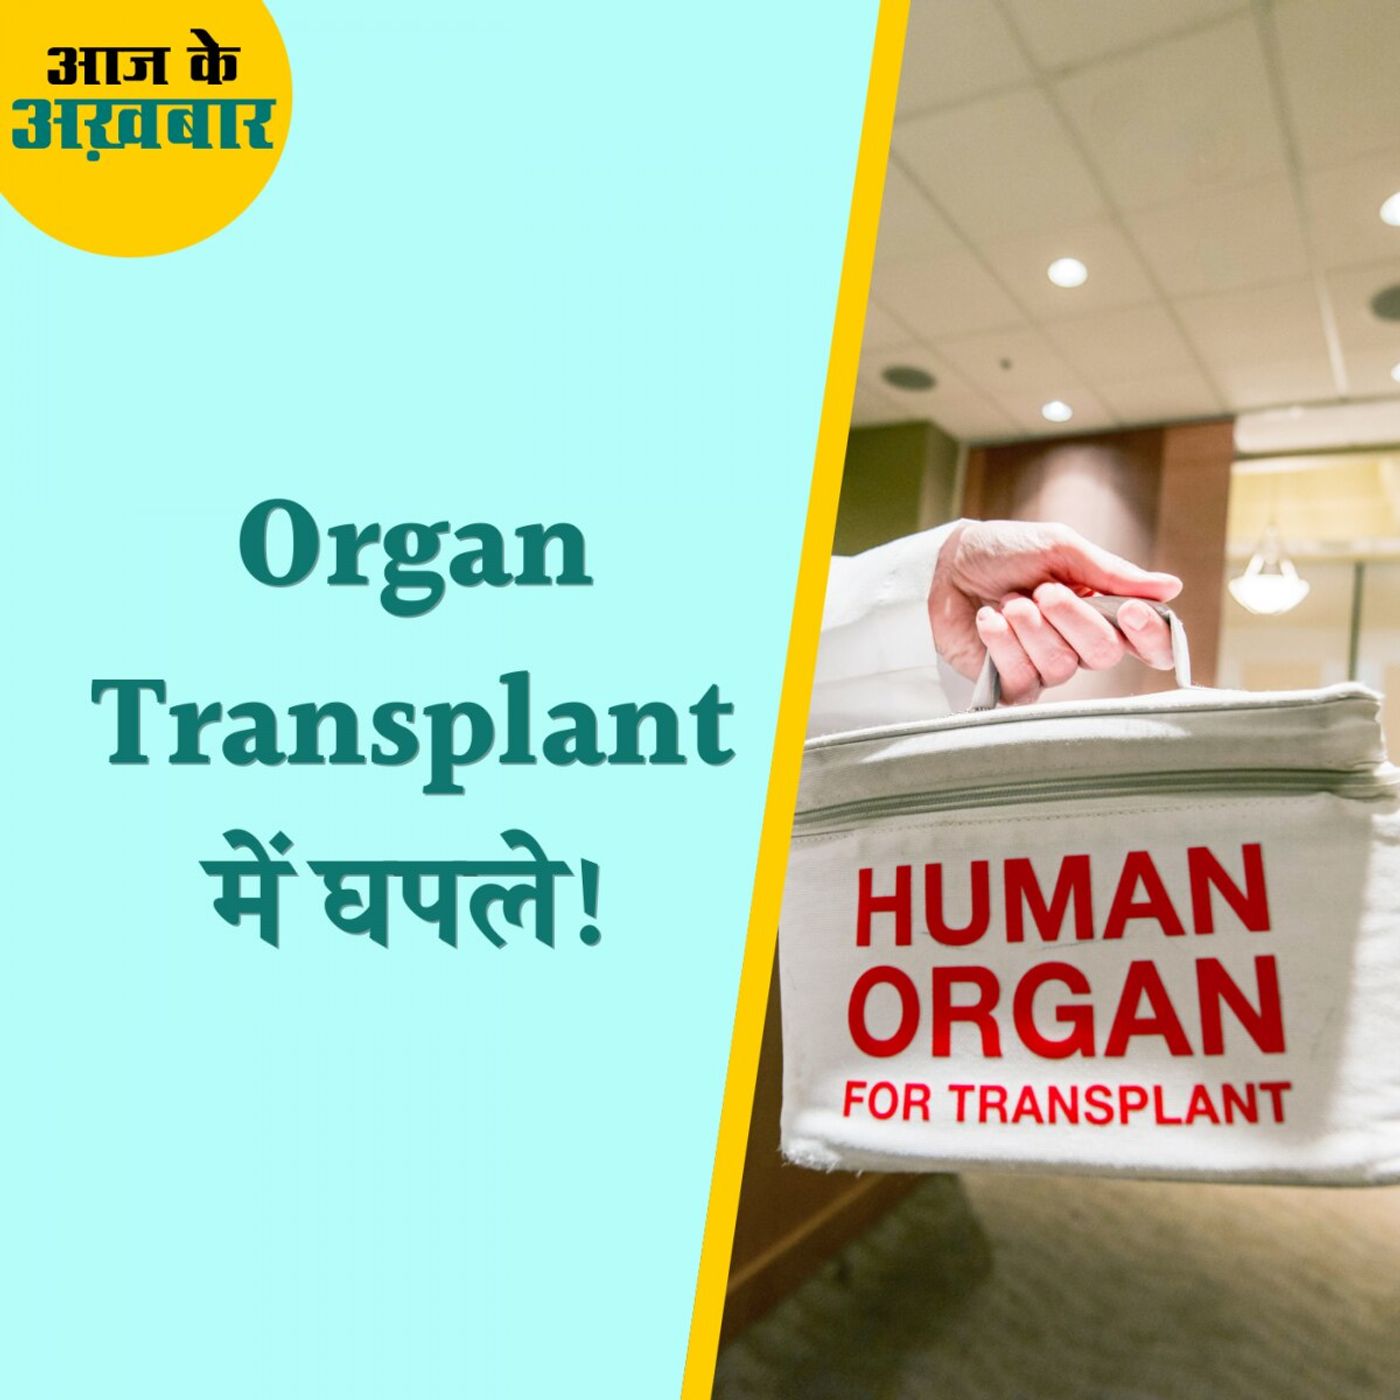 भारत में अचानक विदेशी लोगों से जुड़े Organ Transplant के केस कैसे बढ़े?: आज के अखबार, 15 अप्रैल